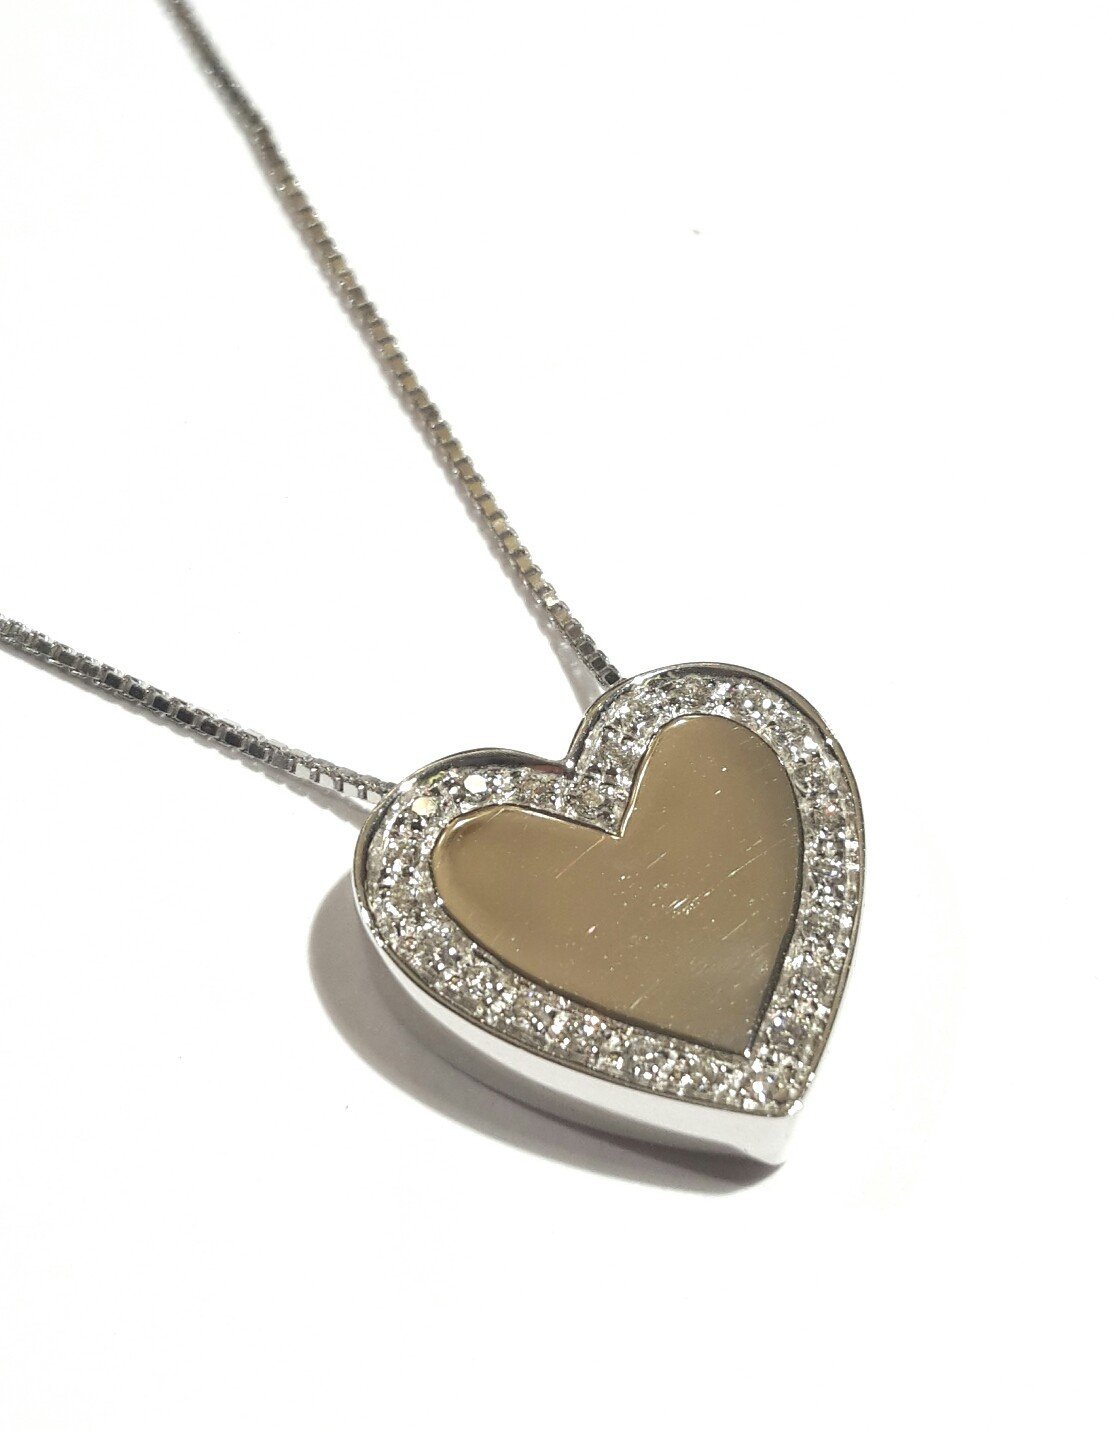 Collana Salvini cuore oro bianco e diamanti|bonini-gioielli